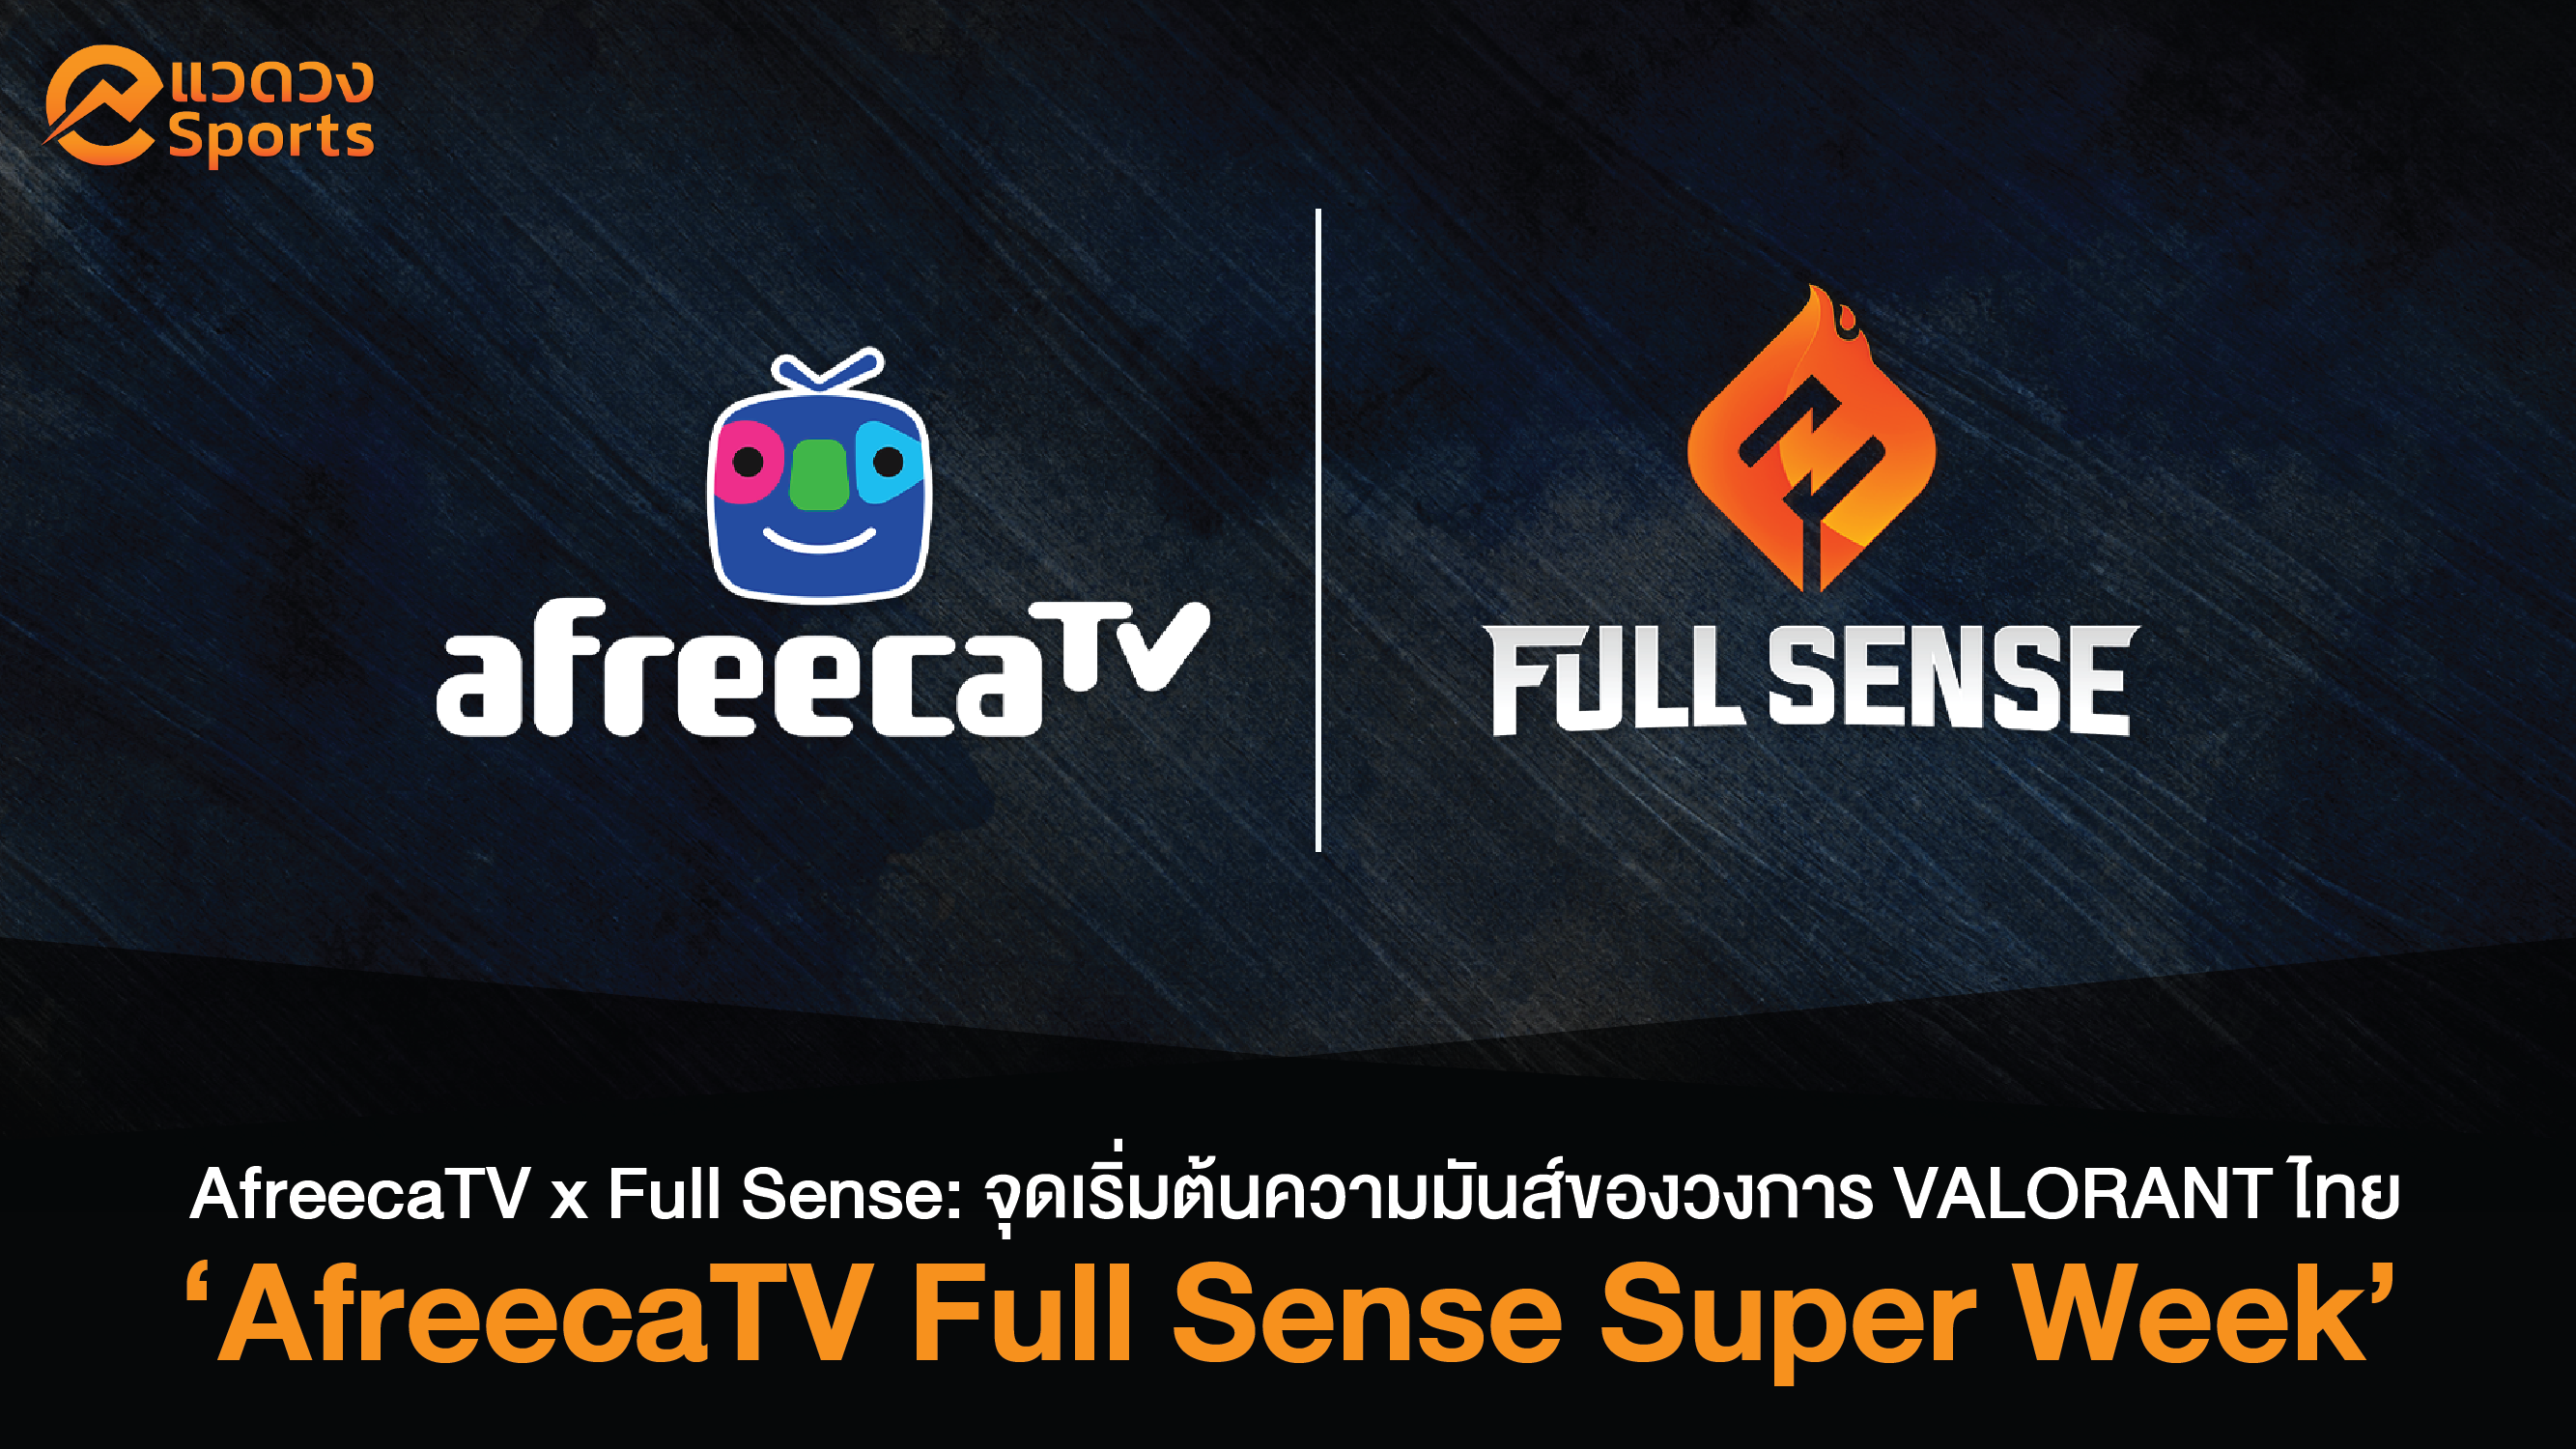 AfreecaTV x Full Sense ส่งคอนเทนต์เอาใจแฟนวาโล!